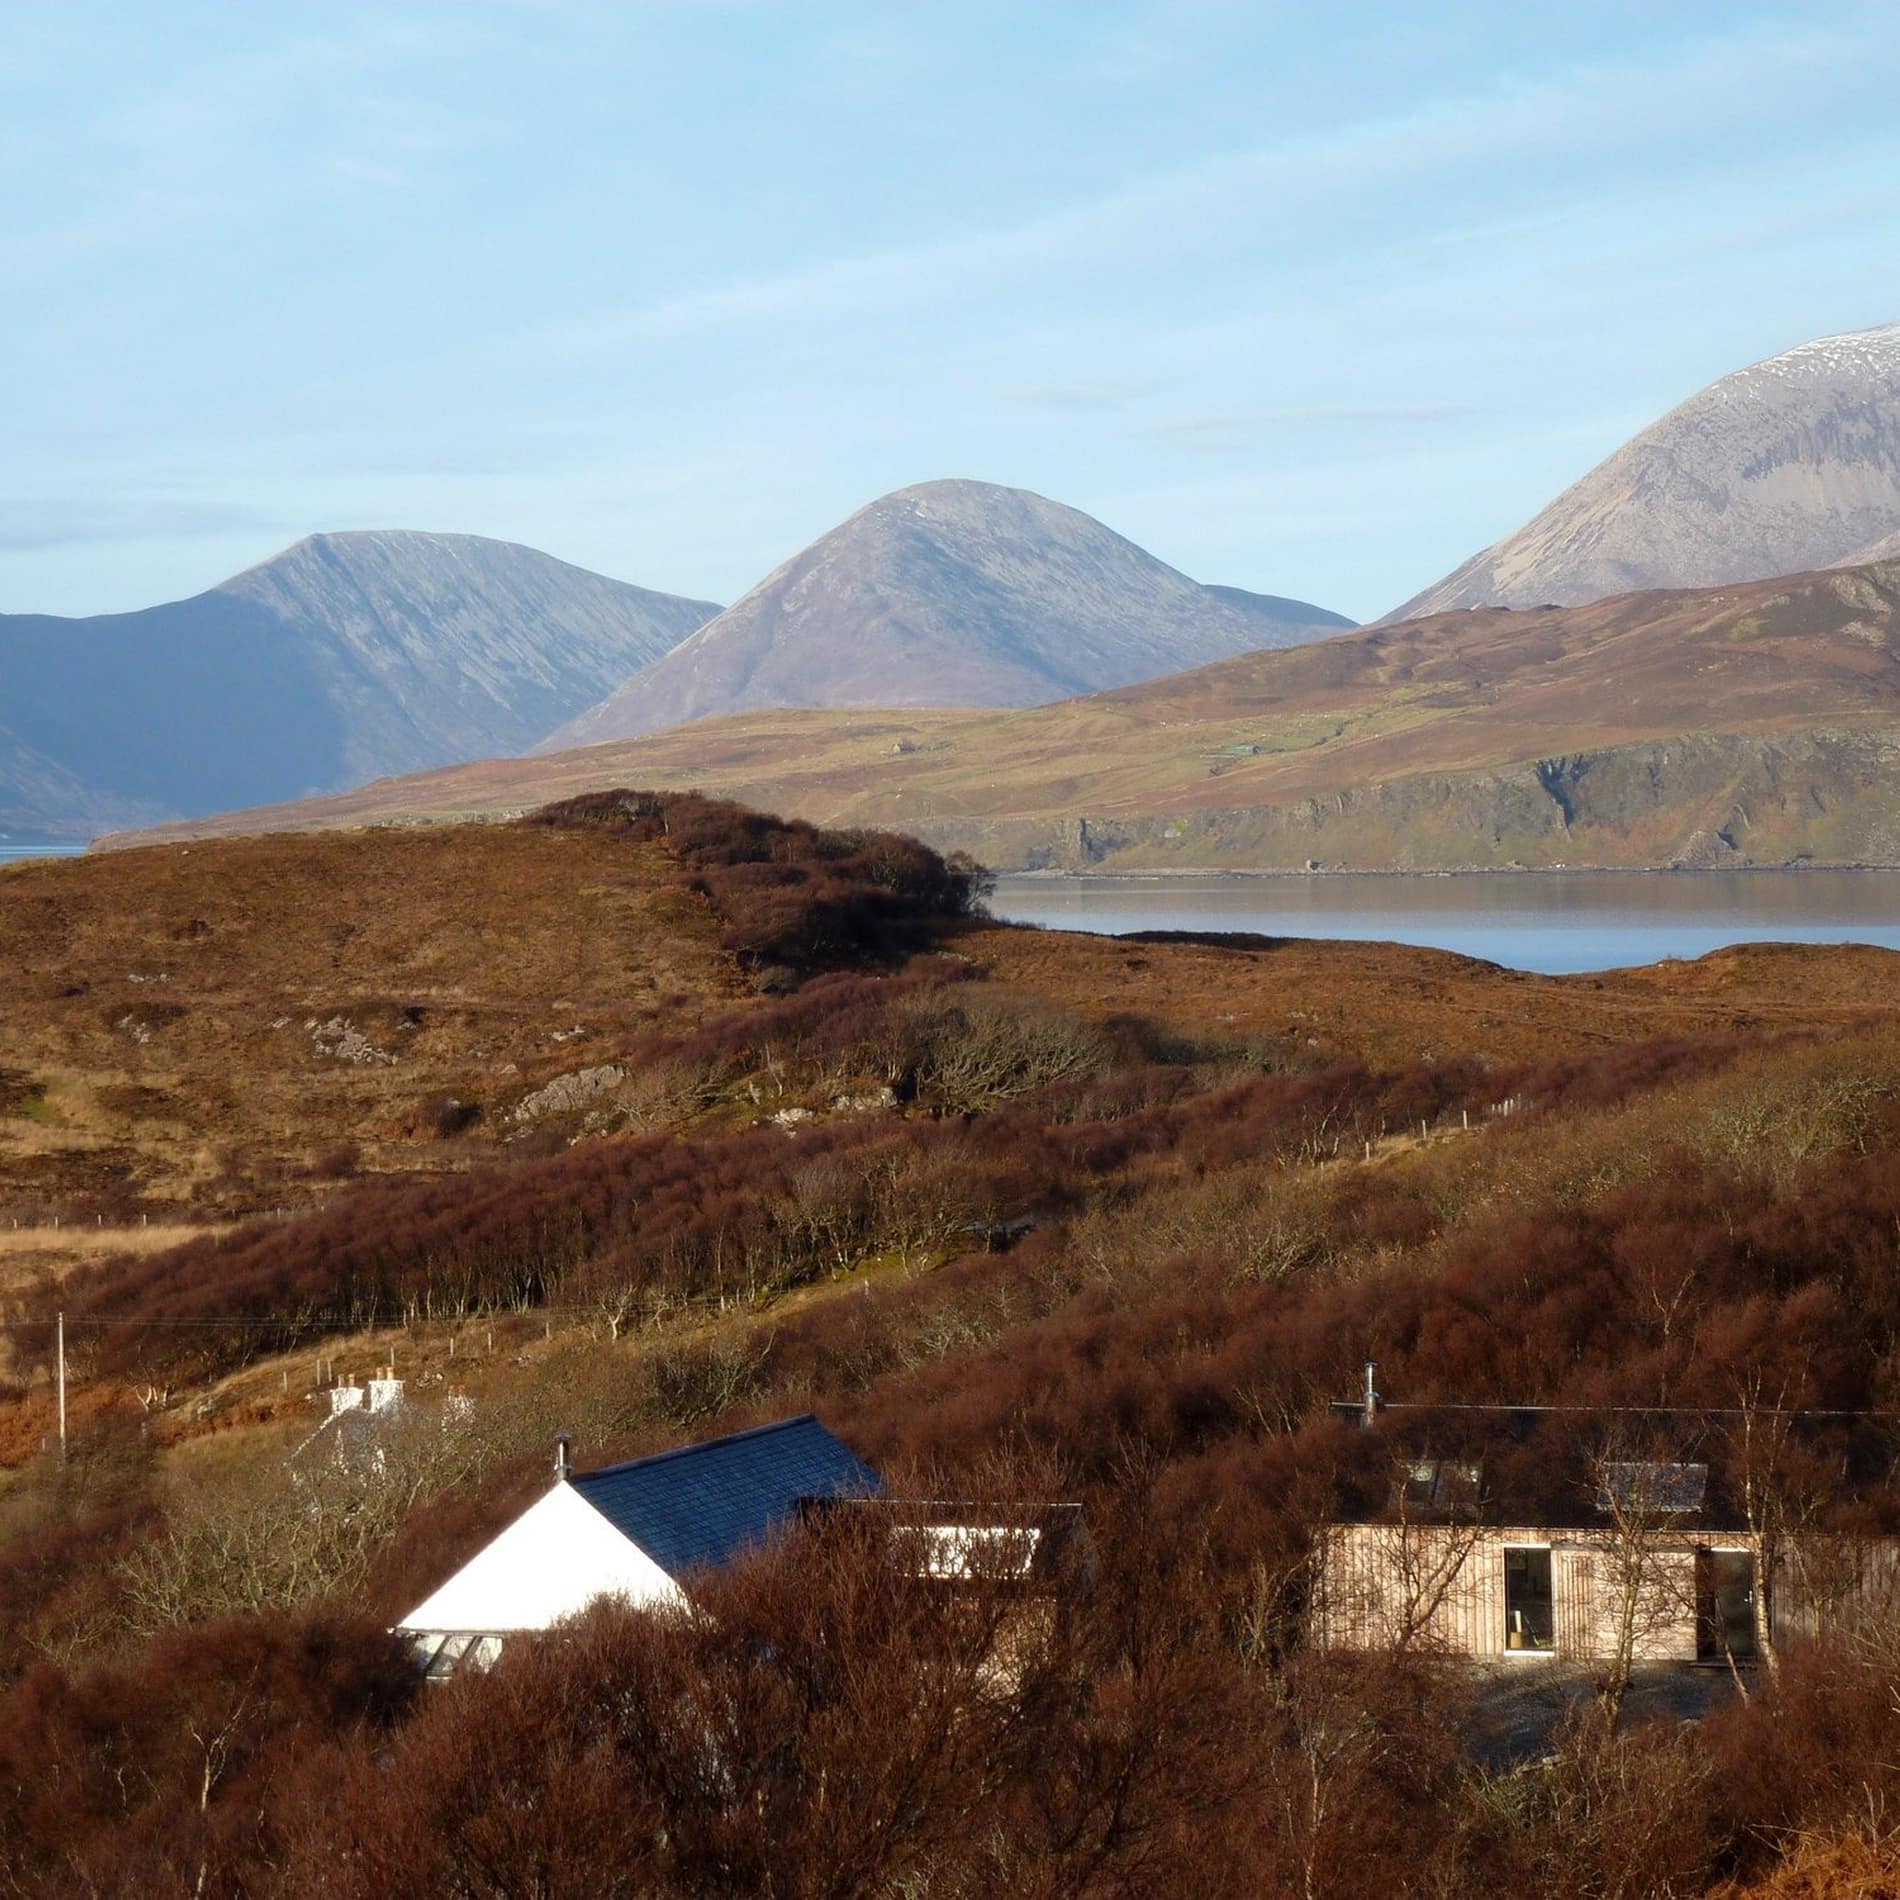 Über dem Dach der Ferienwohnung in Skye ist die schottische Landschaft mit Loch Eishort und den Red-Cuillin-Bergen zu sehen.